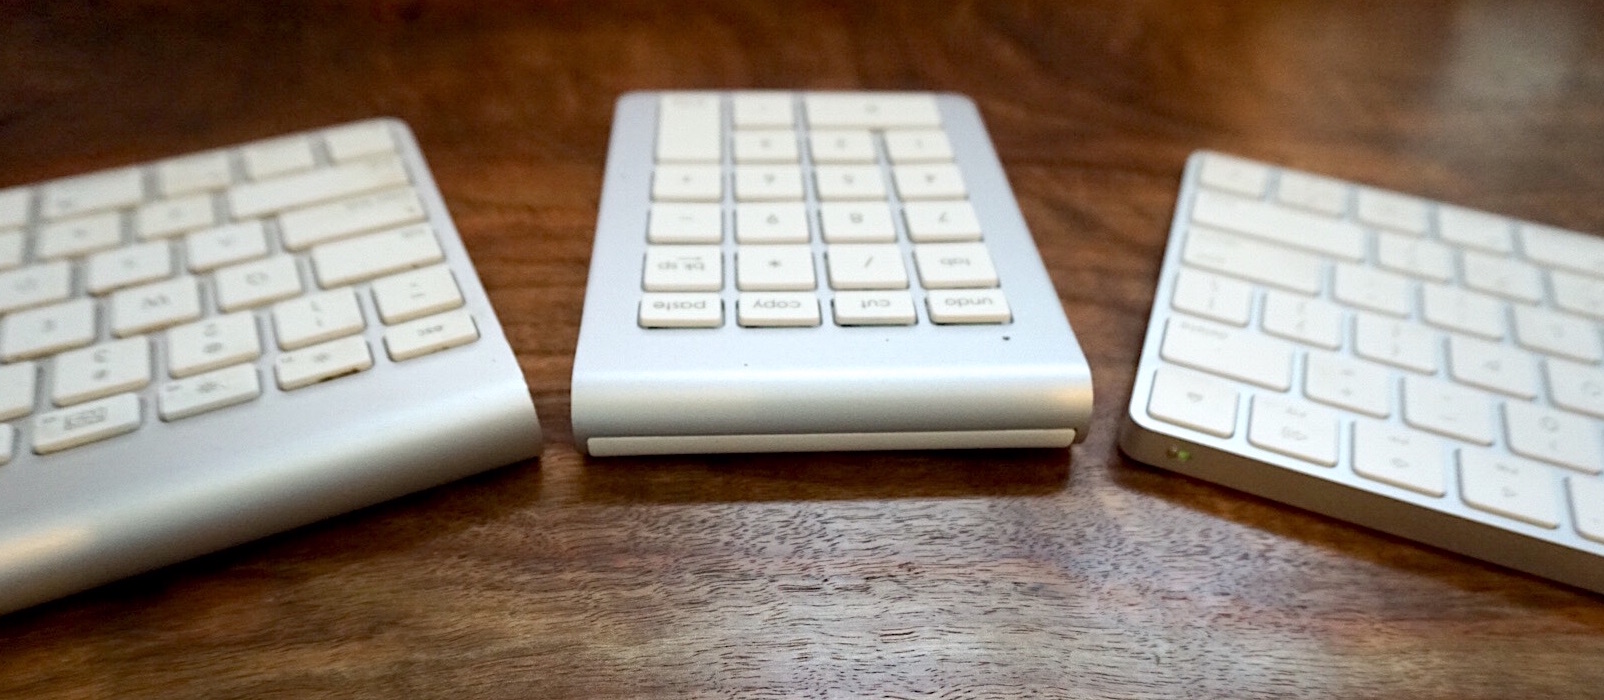 Satechi-Wireless-Keypad-02